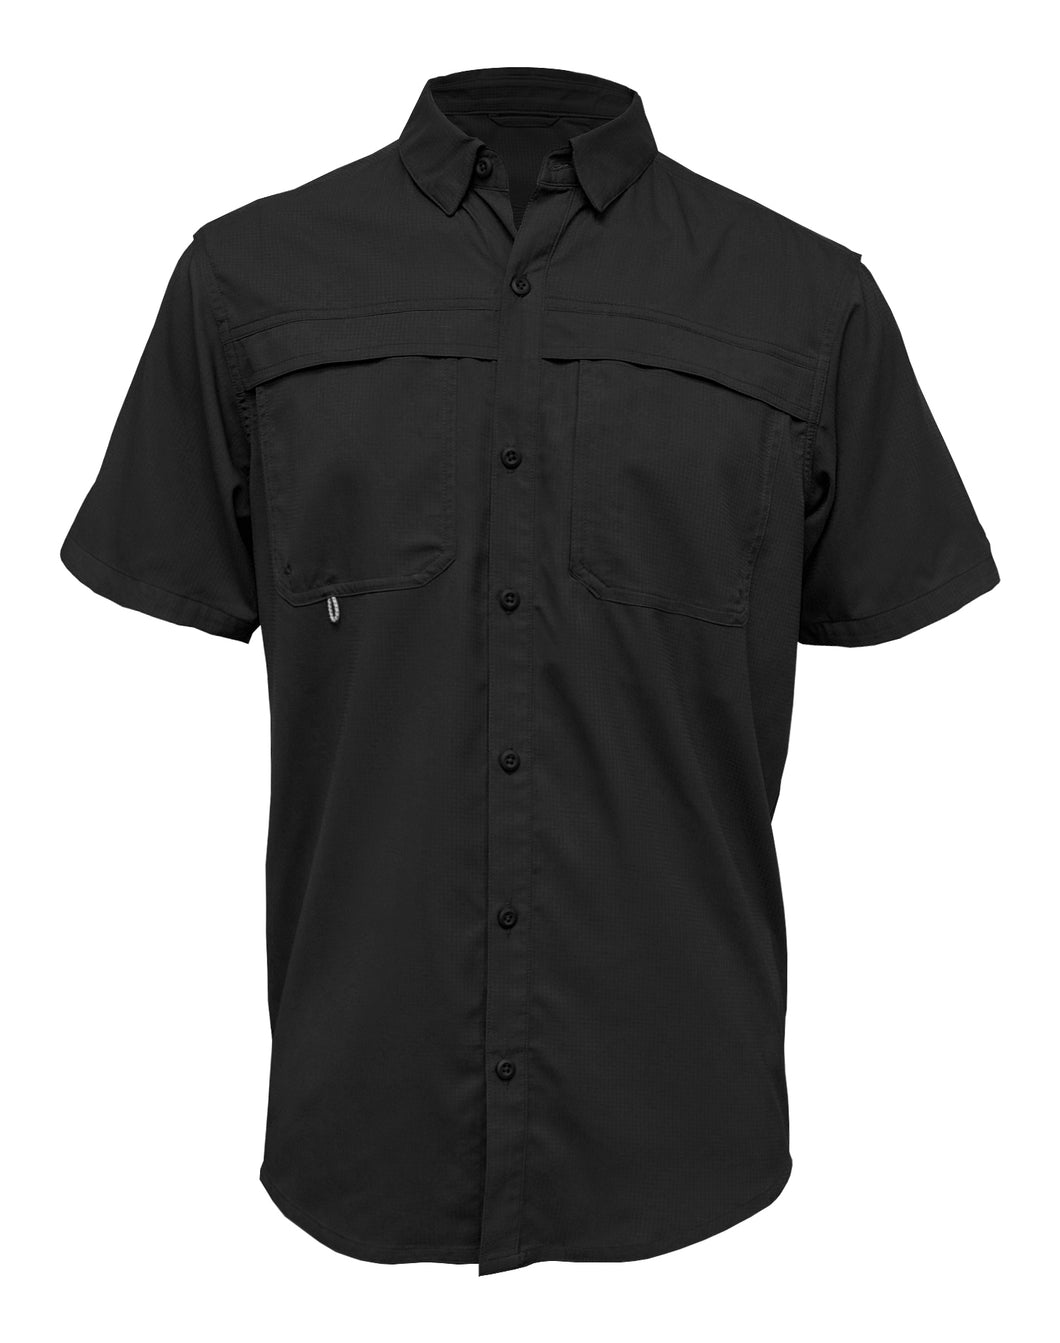 Men's Short Sleeve SoWal Beach Button Up Shirt